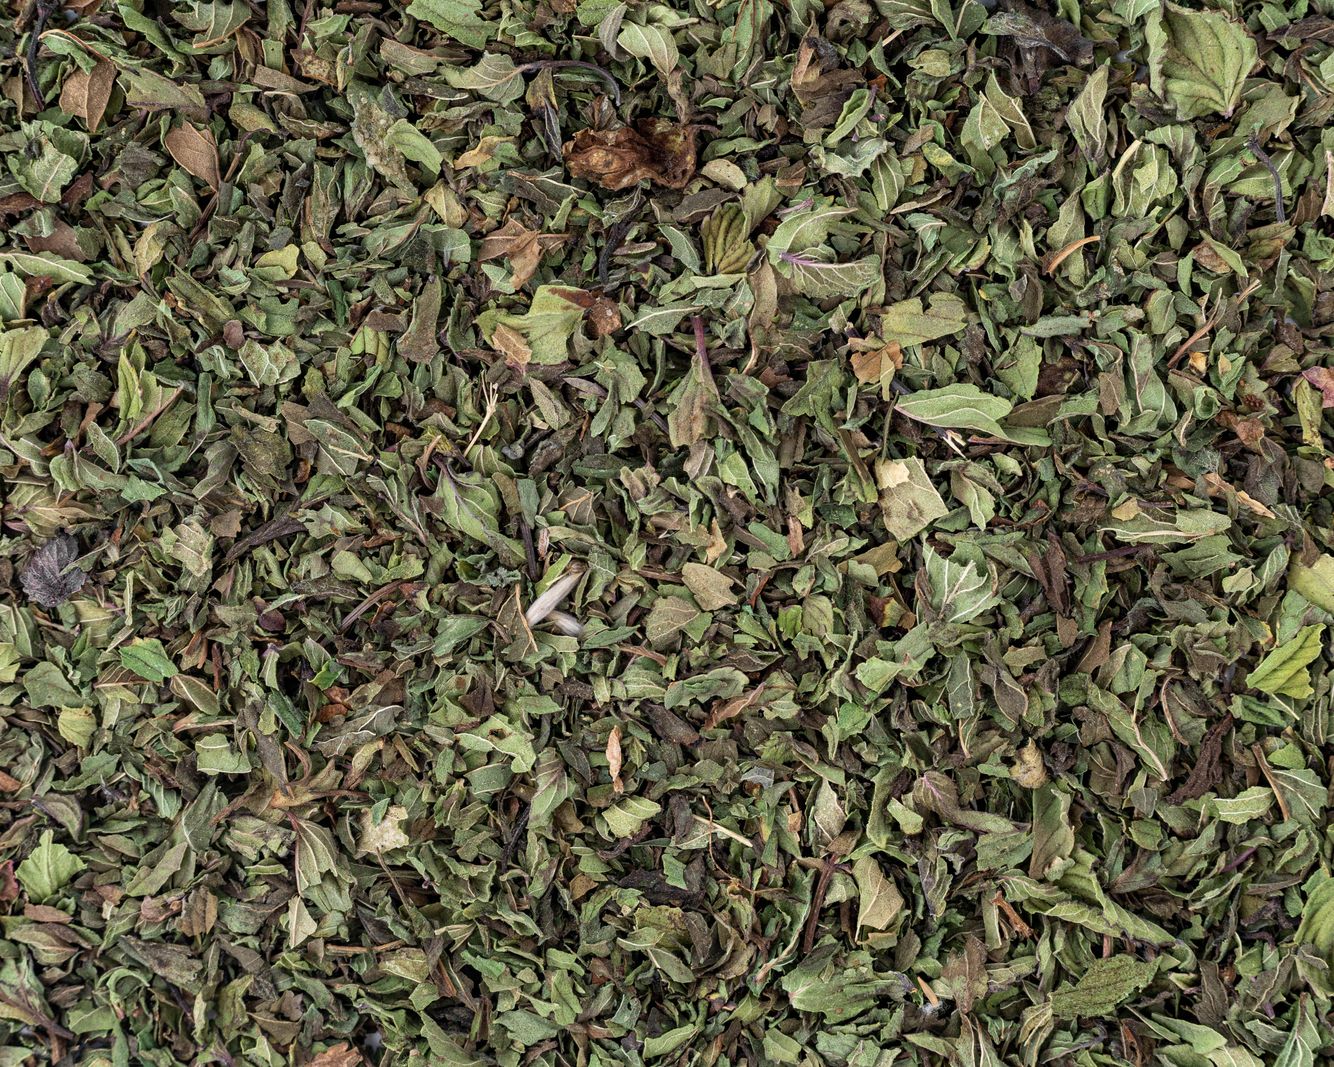 Vilgain Mátový bylinný čaj